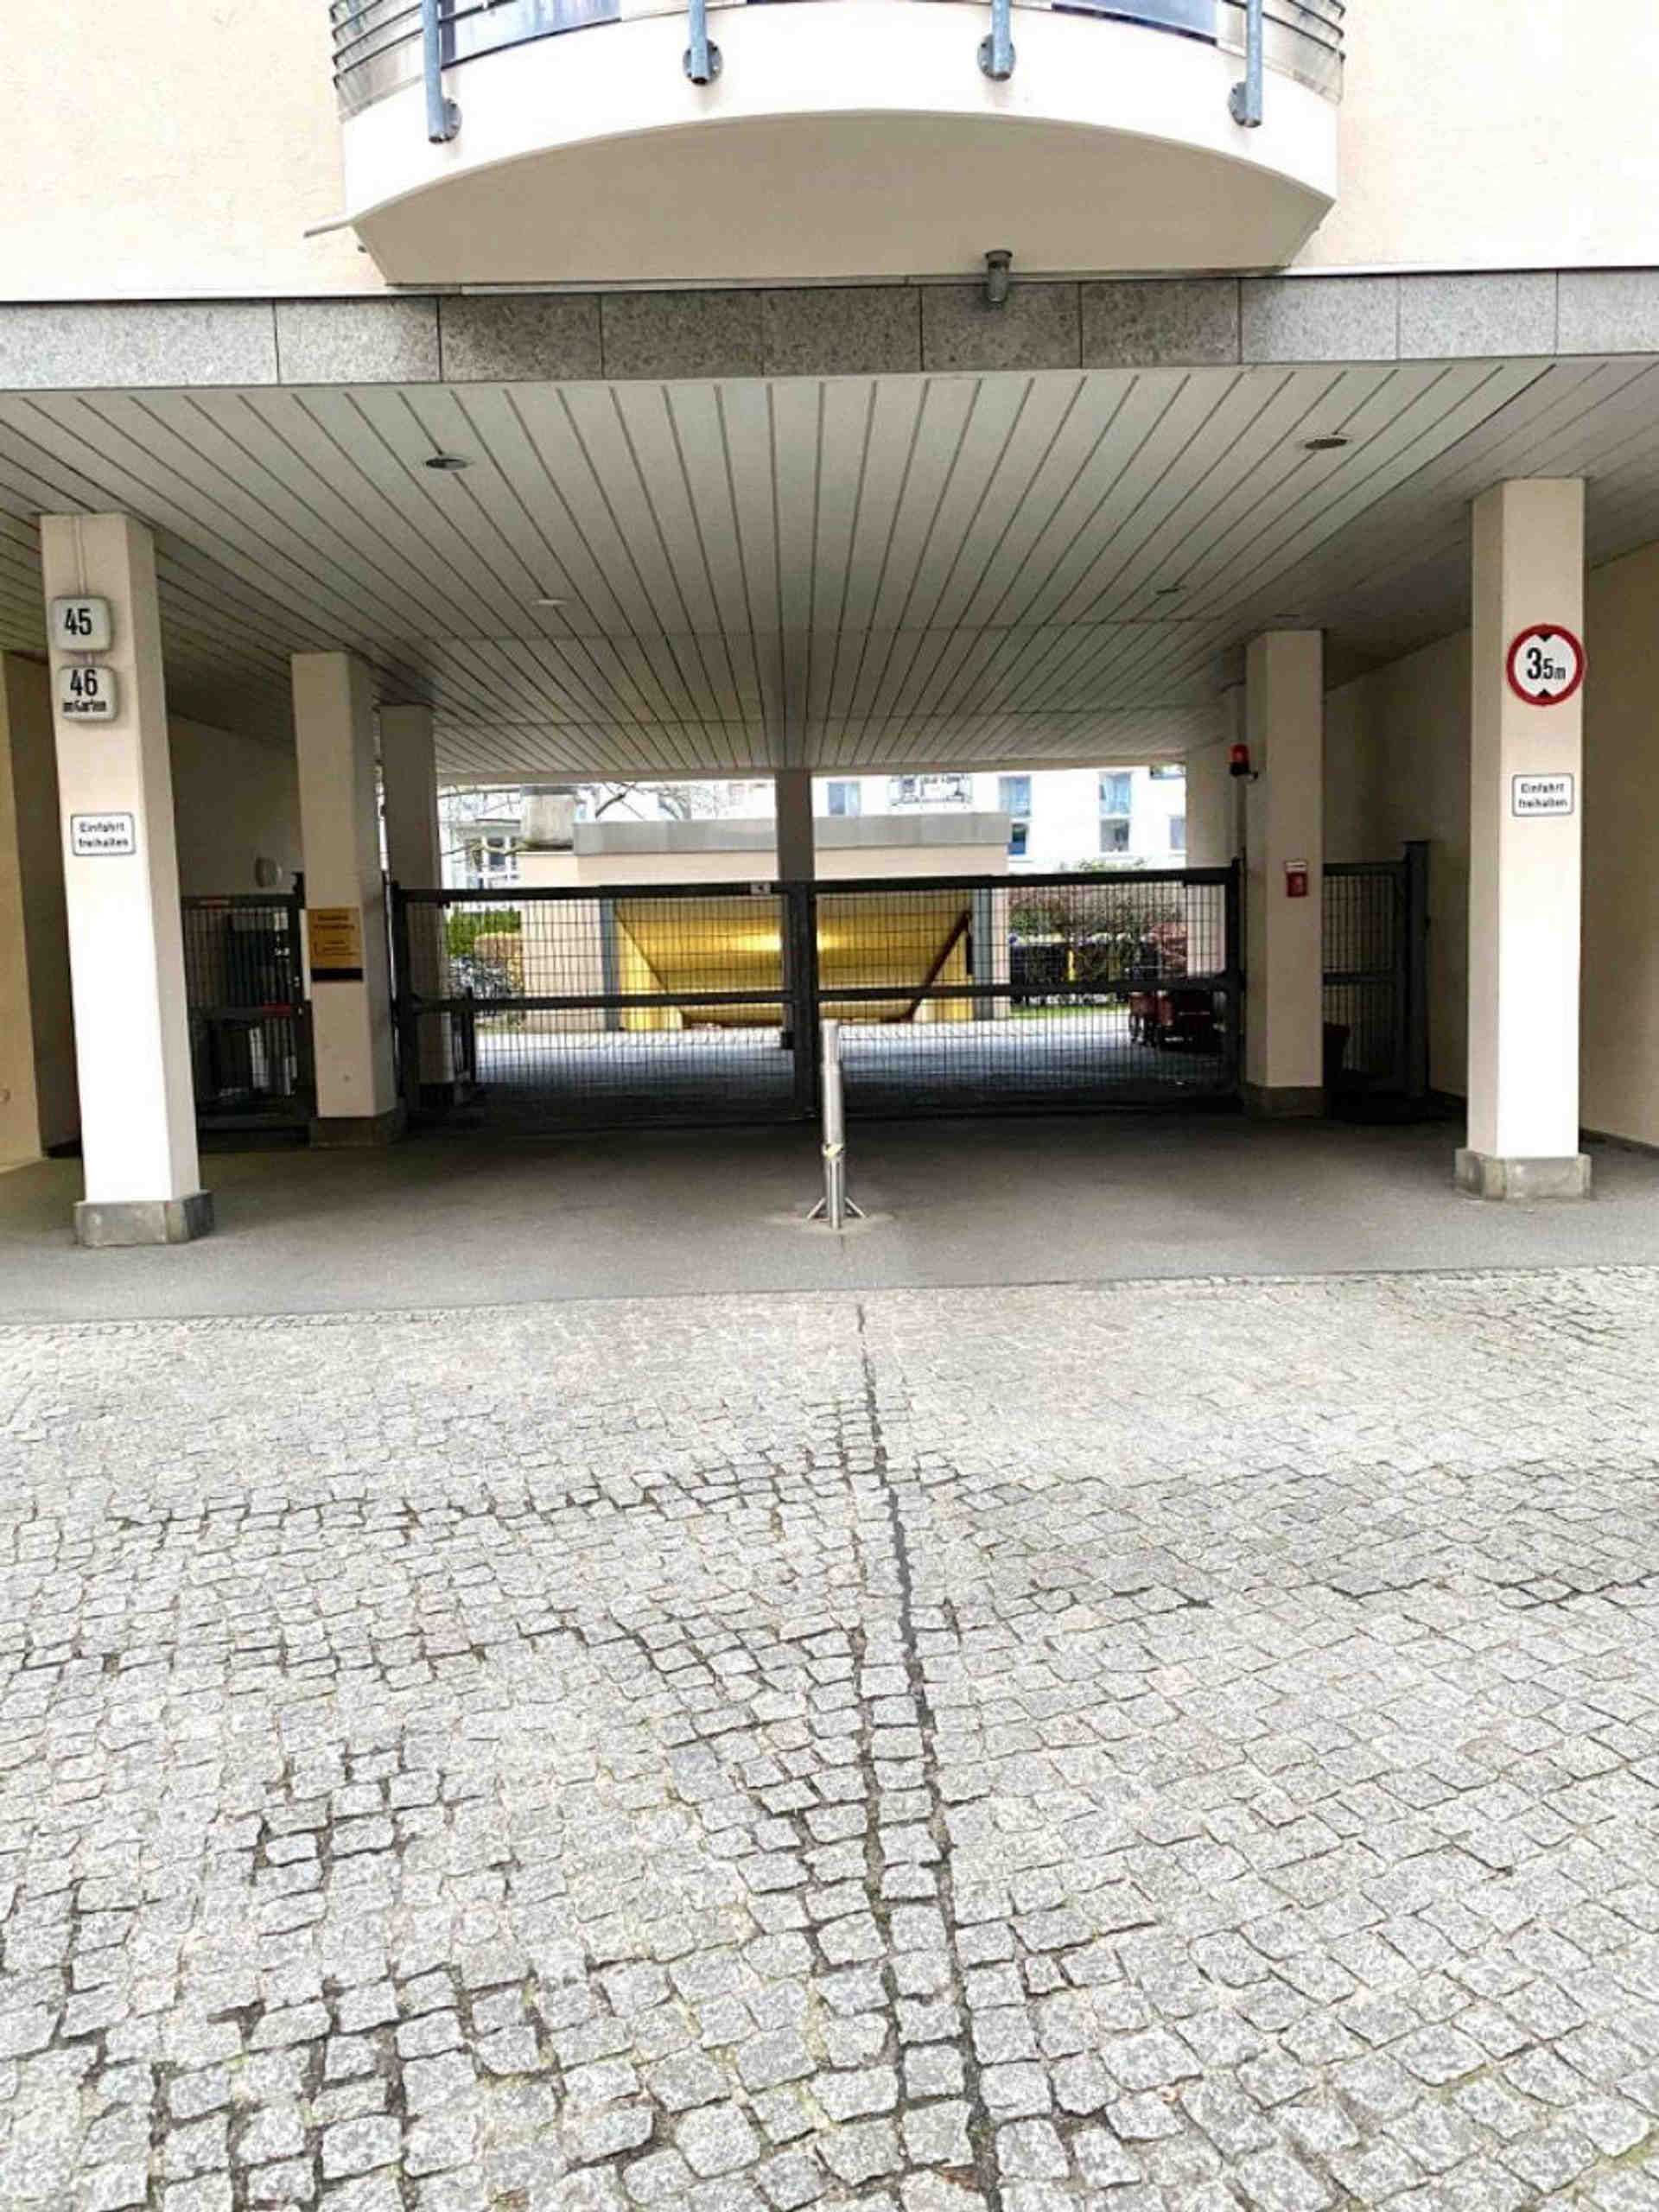 Tiefgaragen-Stellplatz zu vermieten in Prenzlauer Berg - Schwedter Straße, 10435 Berlin - Fotka 1 z 1